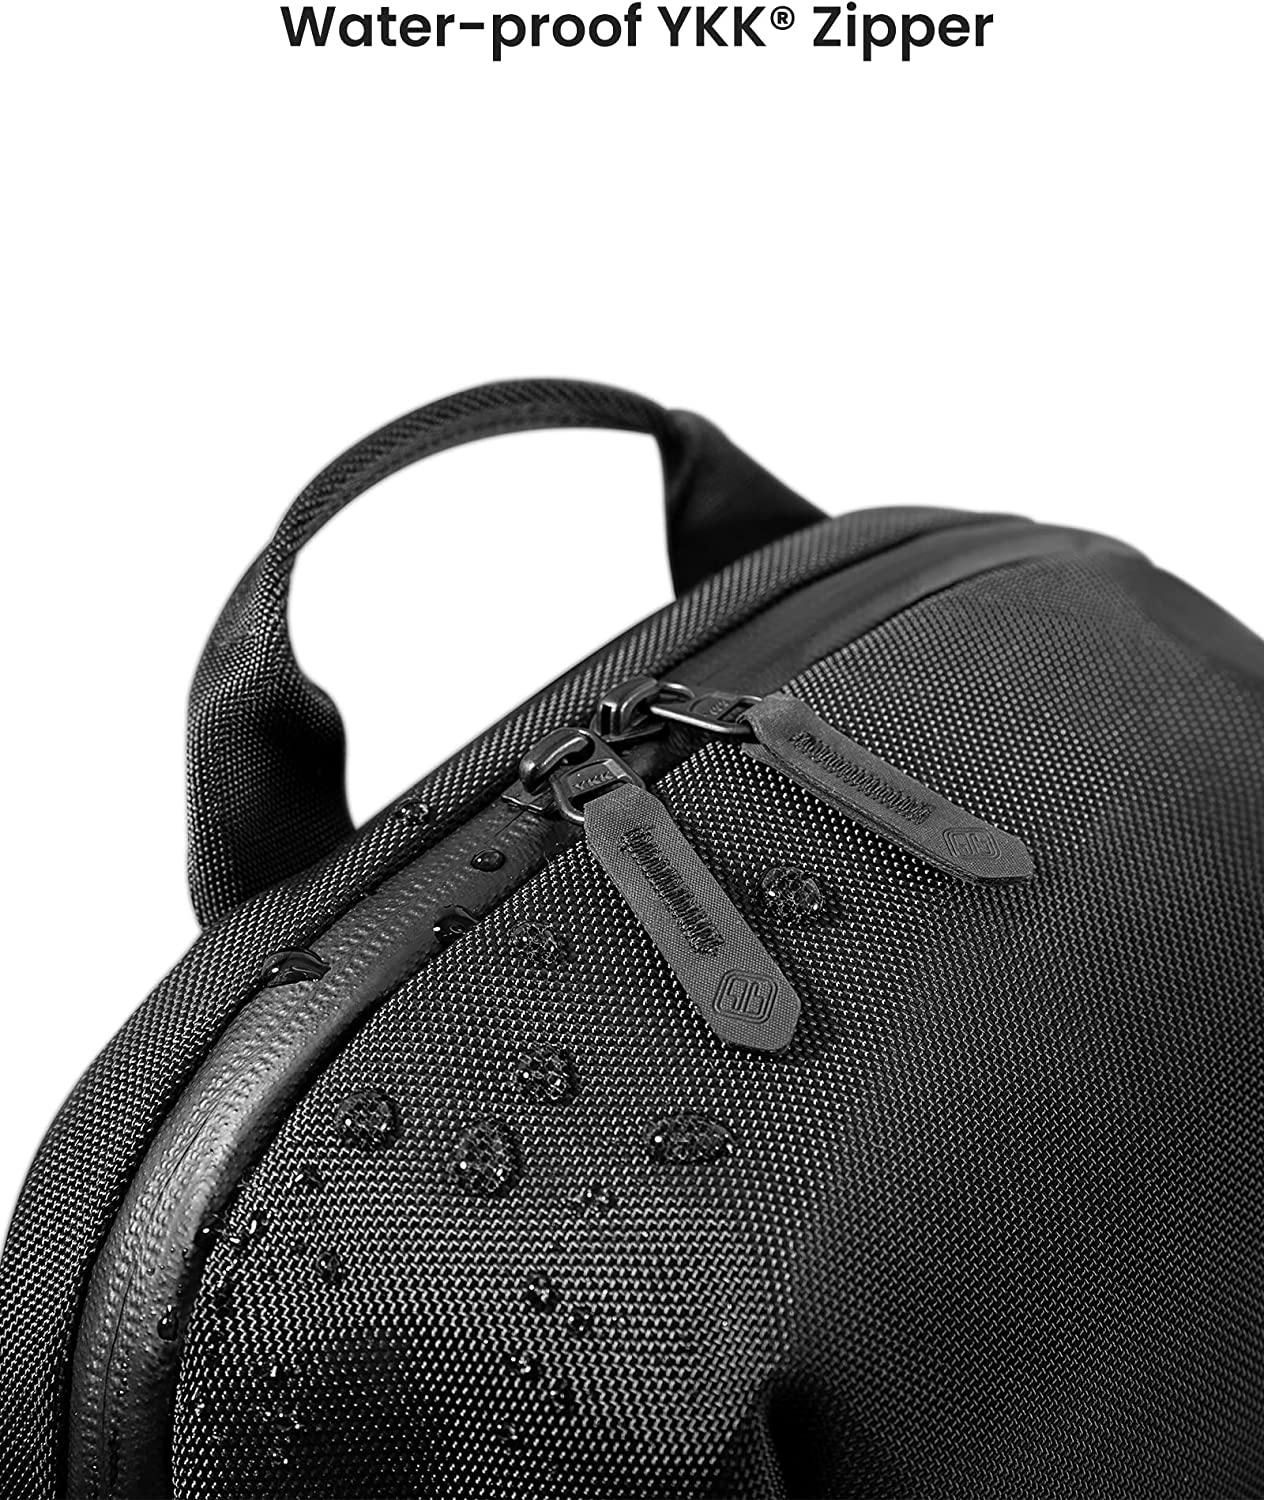 tomtoc 14 Inch Croxbody Shoulder Bag / Sling Bag / Crossbody bag / Men Bag - Black